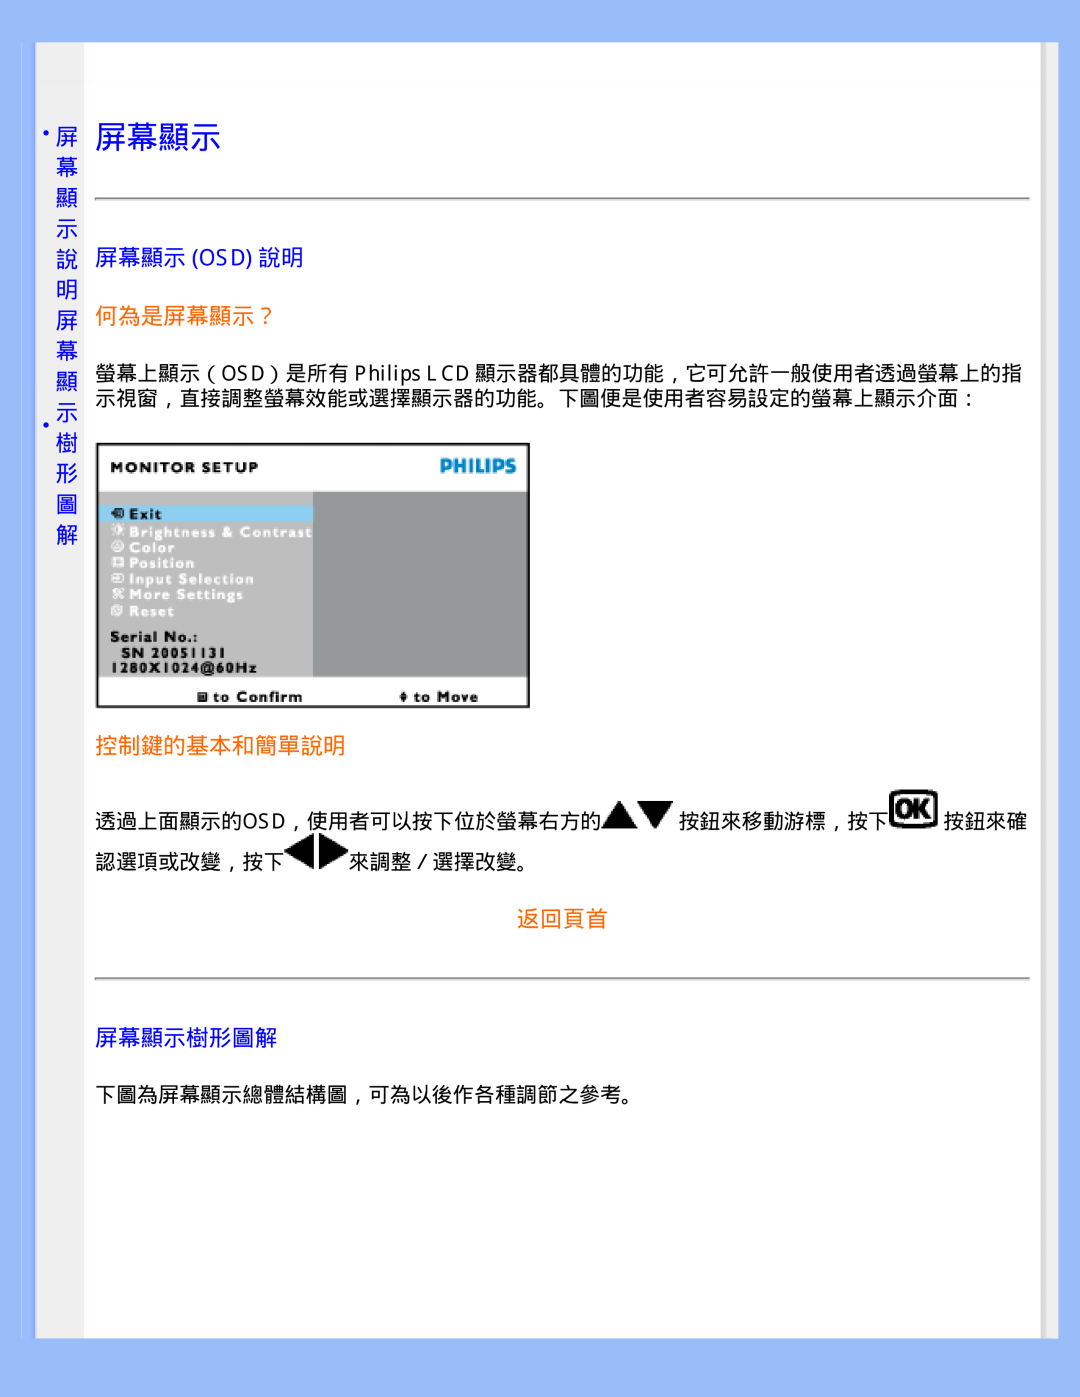 Philips 220WS8 user manual 屏 屏幕顯示, 幕 顯 示 說 屏幕顯示 Osd 說明 明, 屏 何為是屏幕顯示？, 示樹 形 圖 解, 控制鍵的基本和簡單說明, 返回頁首, 屏幕顯示樹形圖解 